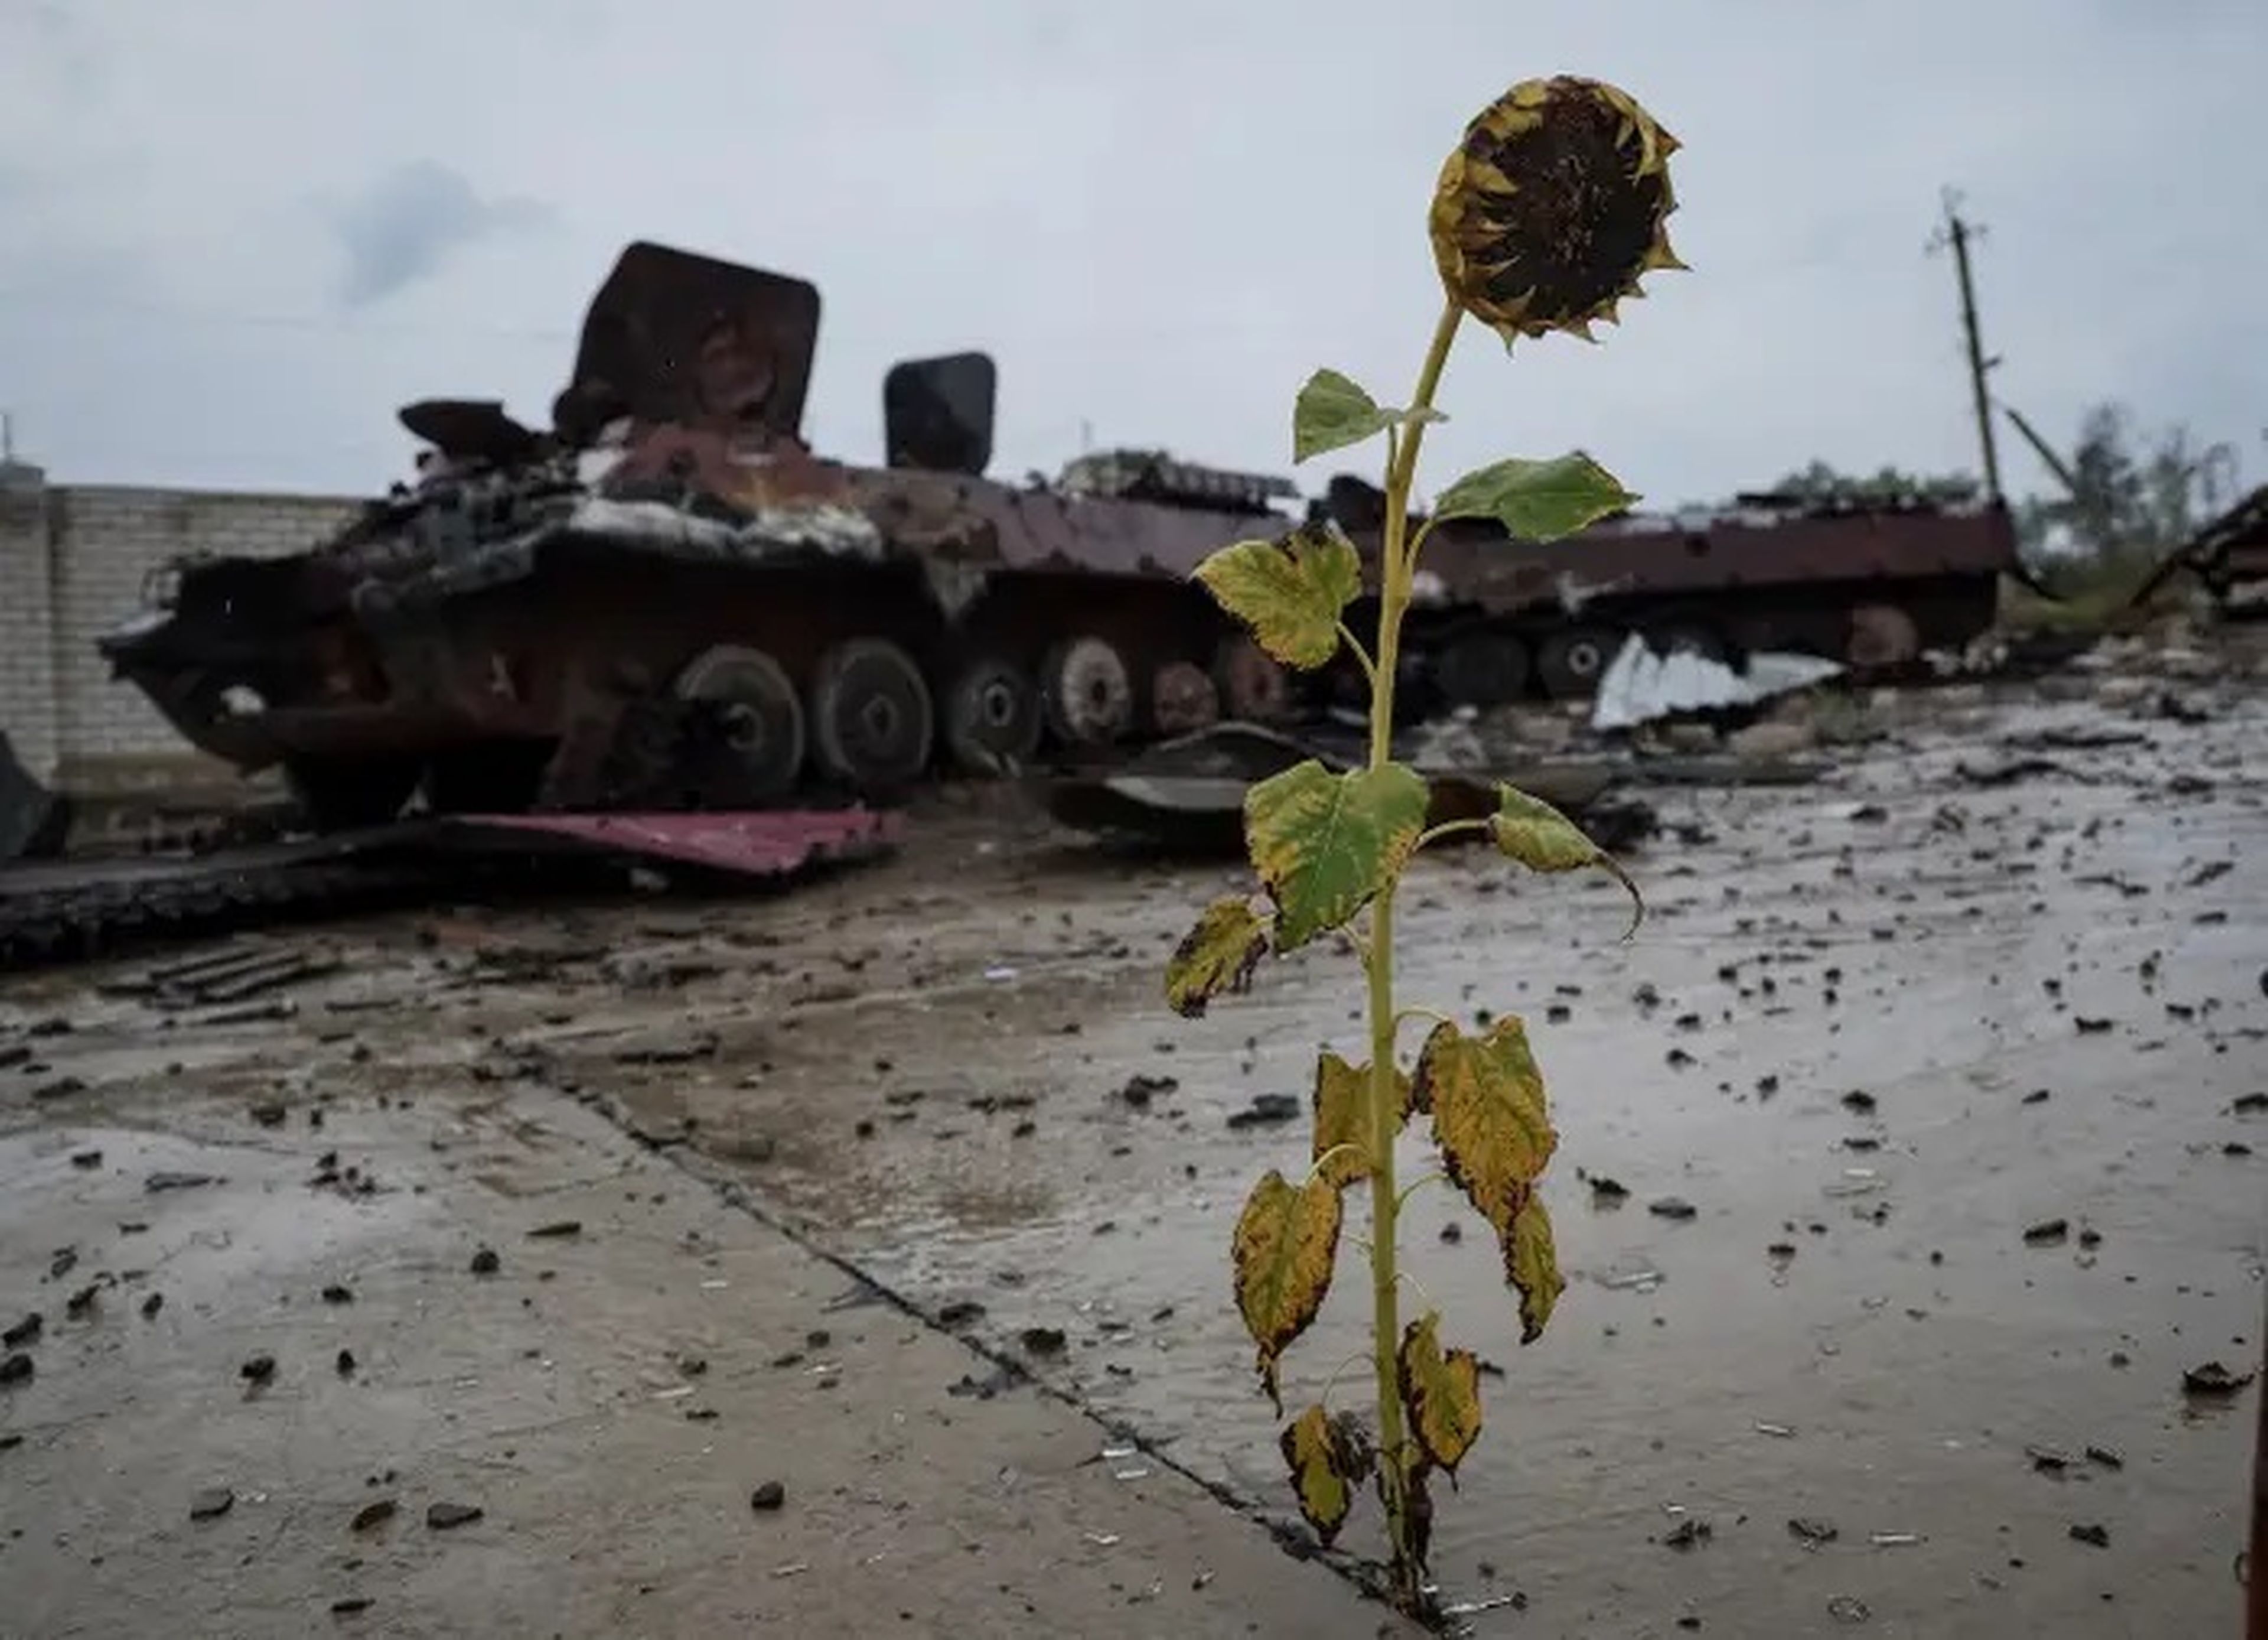 Un vehículo blindado de transporte de personal (APC) ruso destruido se ve cerca del pueblo de Nova Husarivka, Ucrania, el 15 de septiembre de 2022.